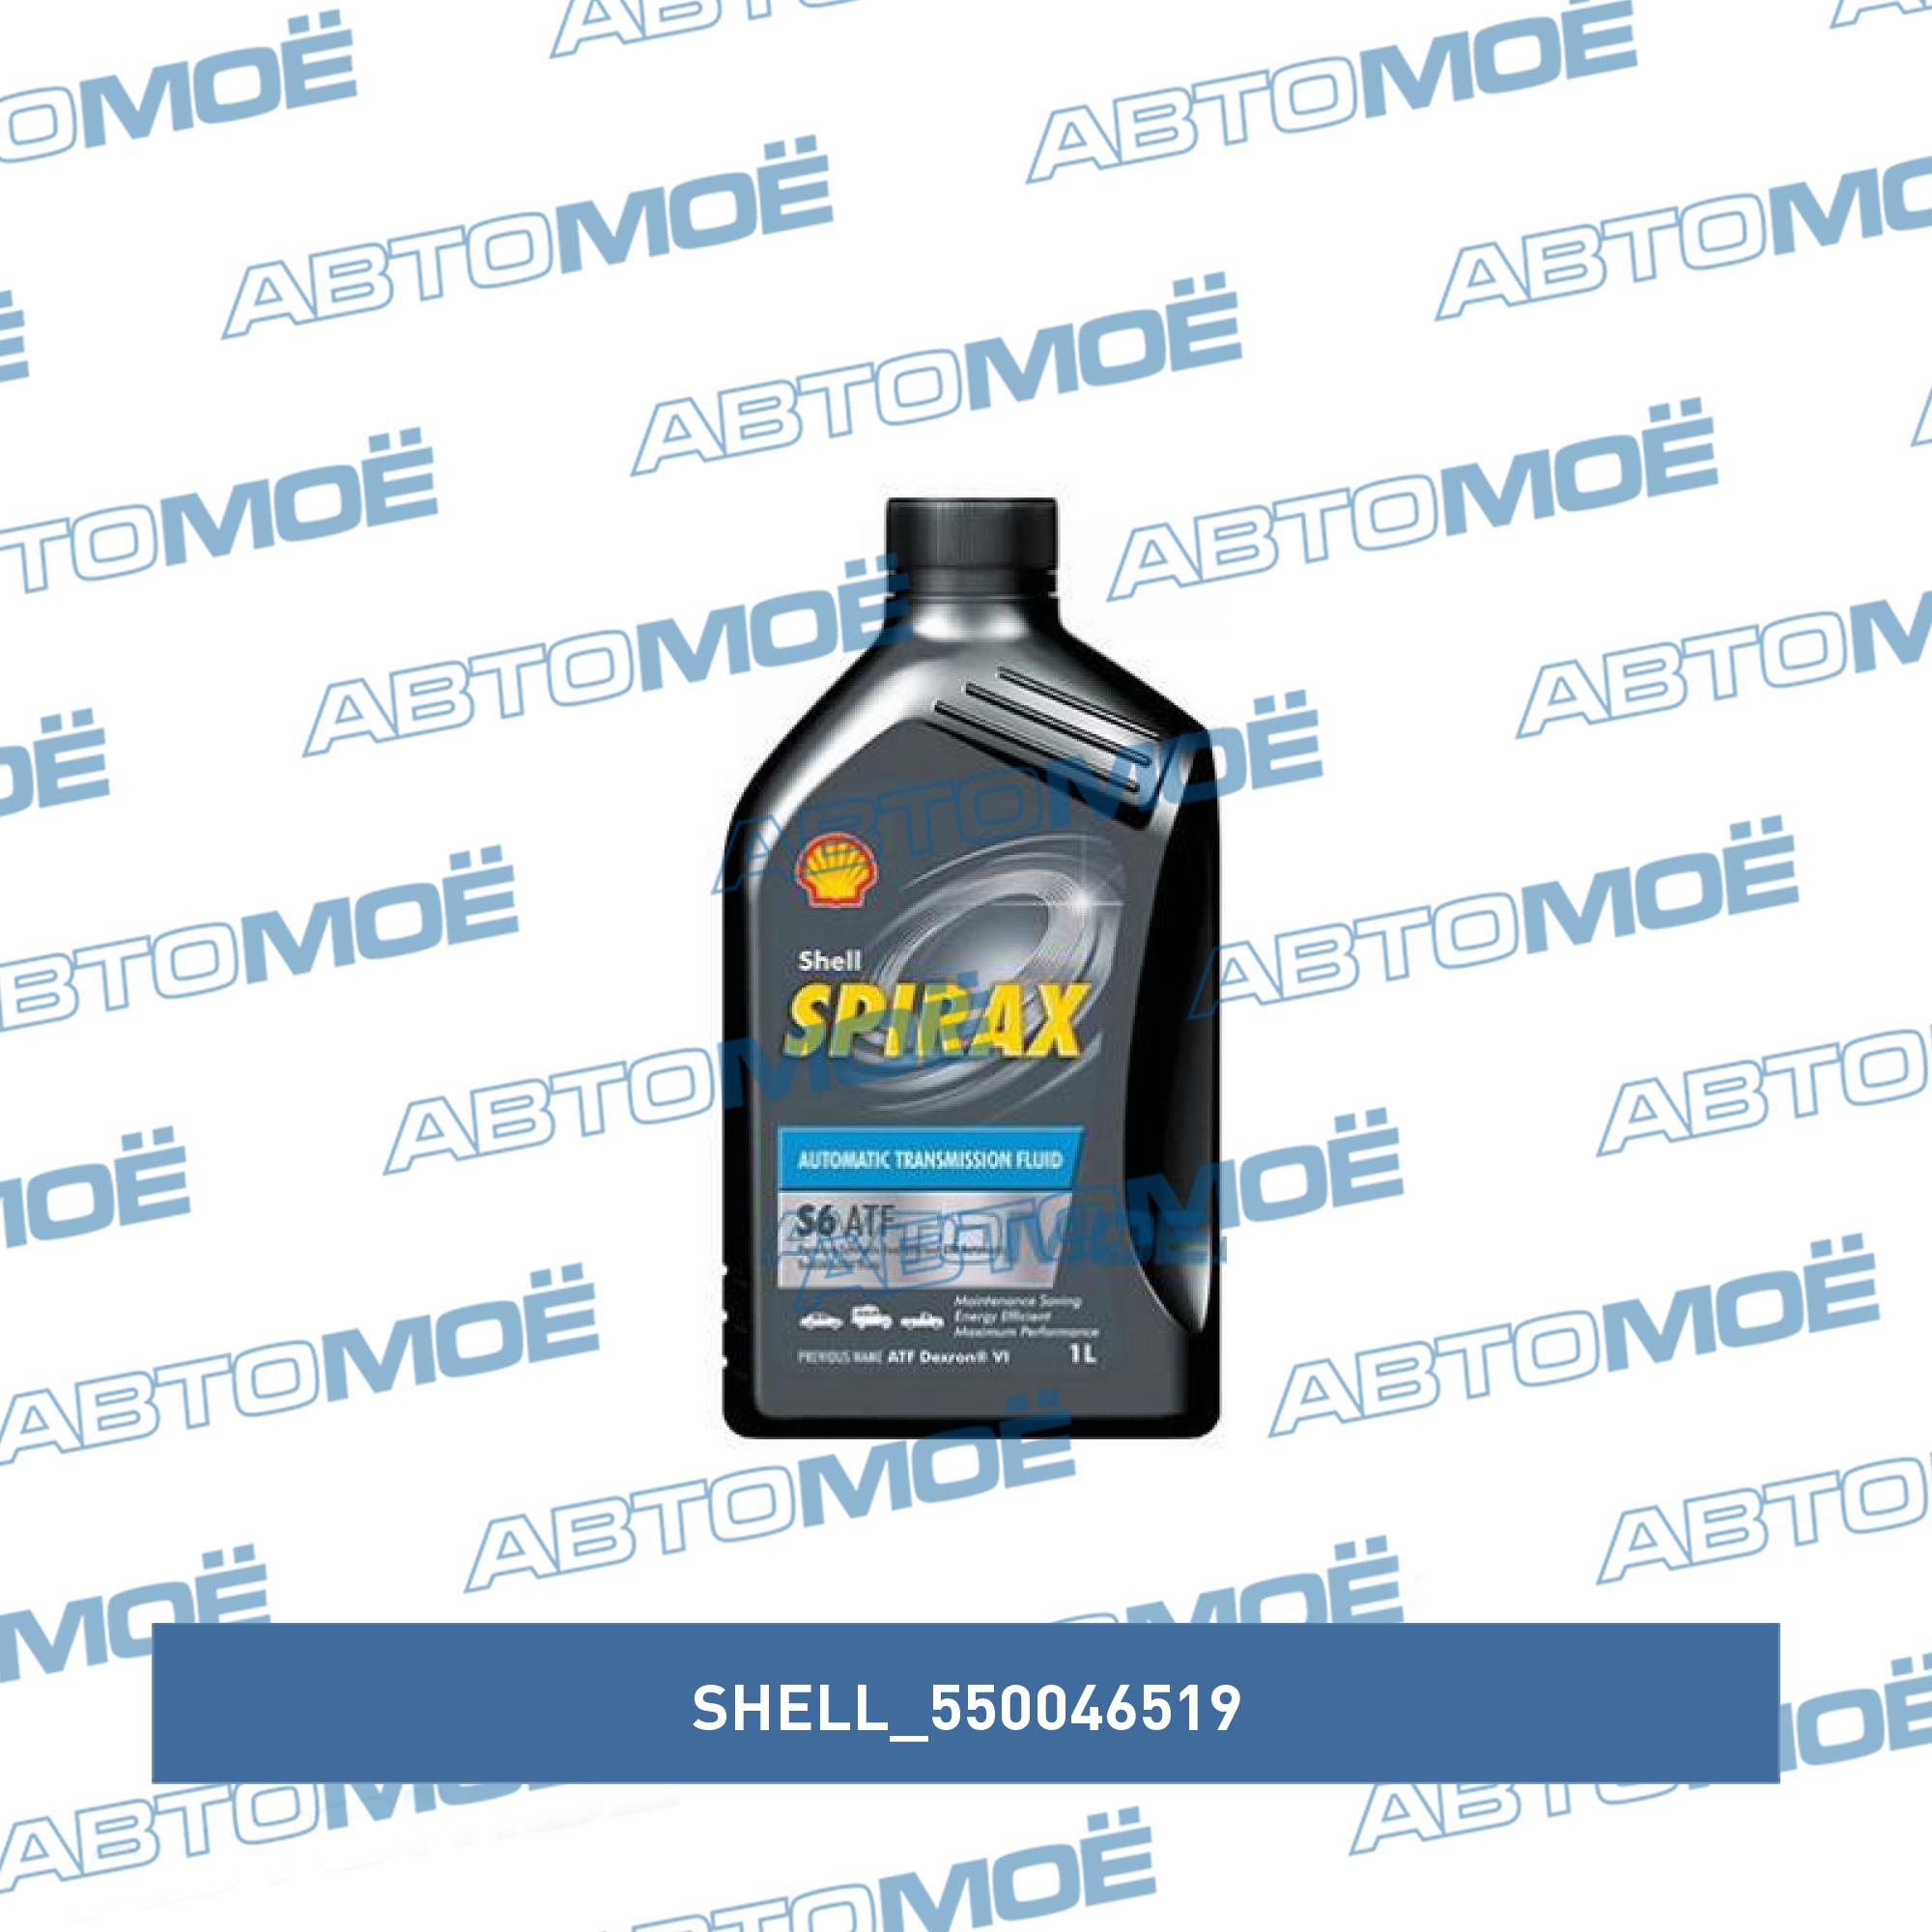 Трансмиссионное масло Shell Spirax s6 ATF X. Shell Spirax s6 ATF X 550046519 масло трансмиссионное Shell Spirax s6 ATF X 1 Л 550046519. Spirax s6 ATF X цена. 550046519.